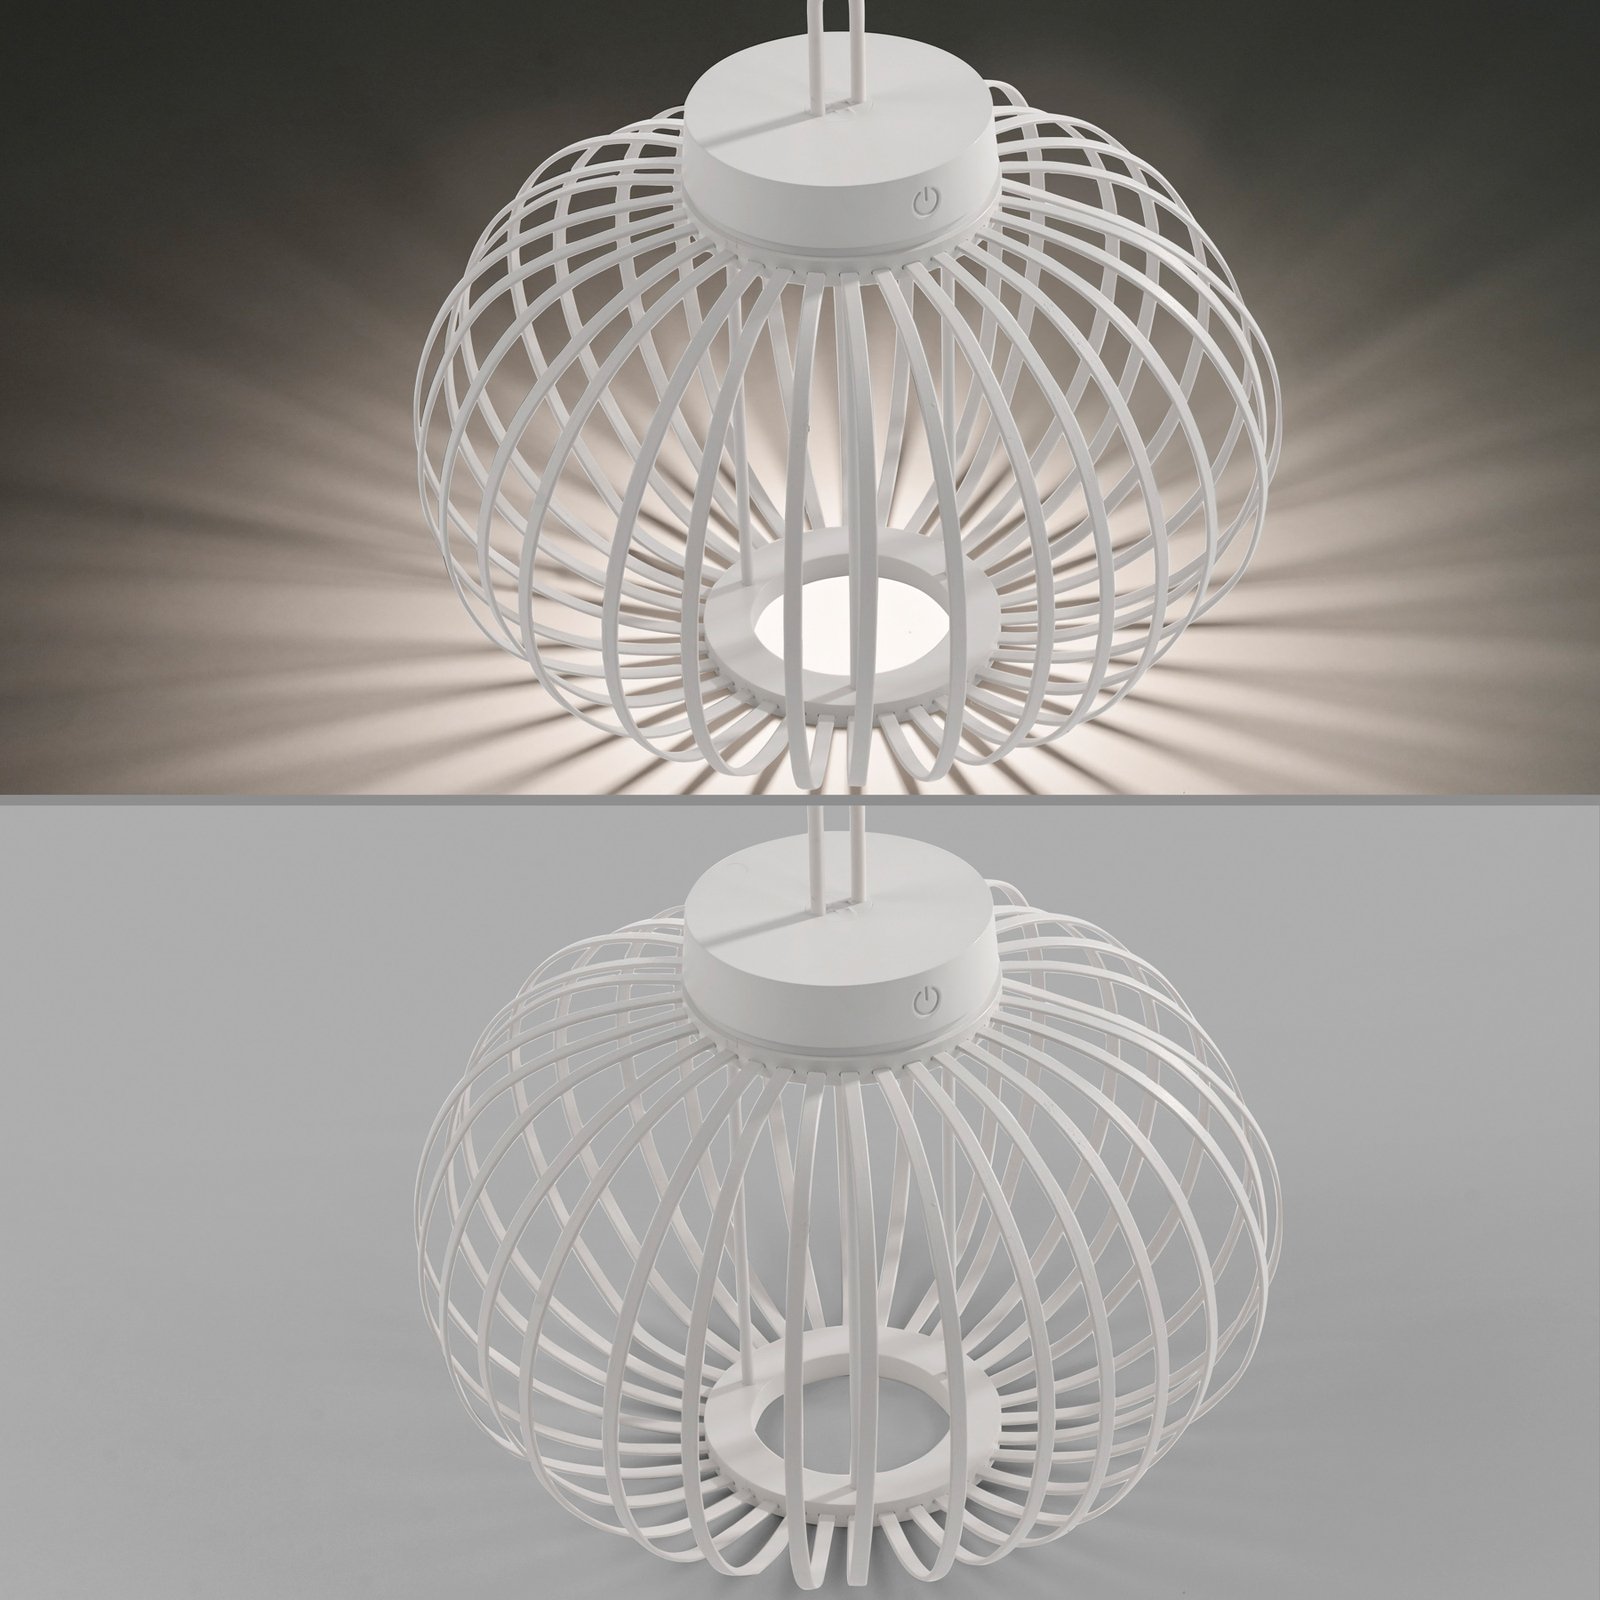 JUST LIGHT. Akuba lampa stołowa LED z akumulatorem, biała, 33 cm, bambus